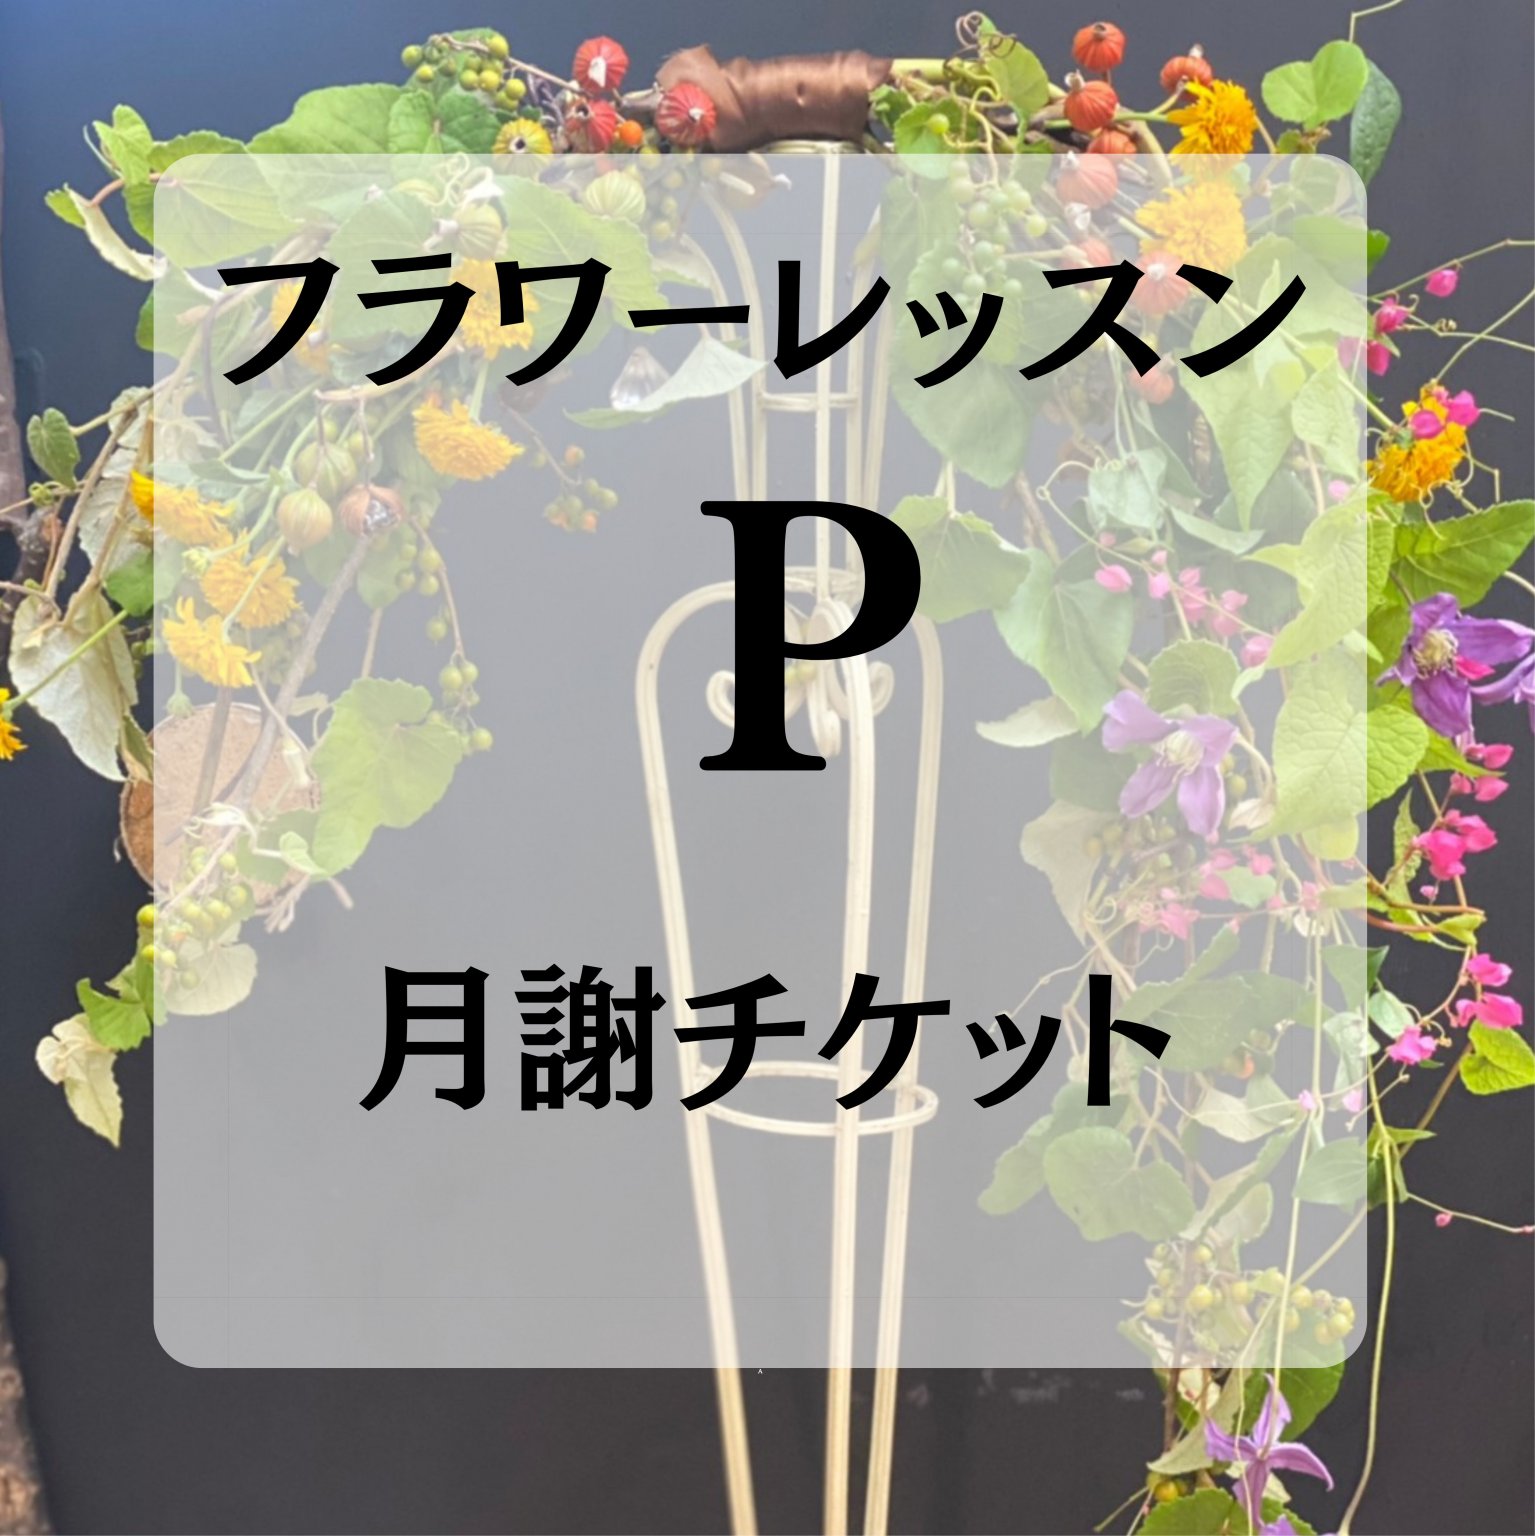 フラワースクール・Pコース/月謝チケット6,000円